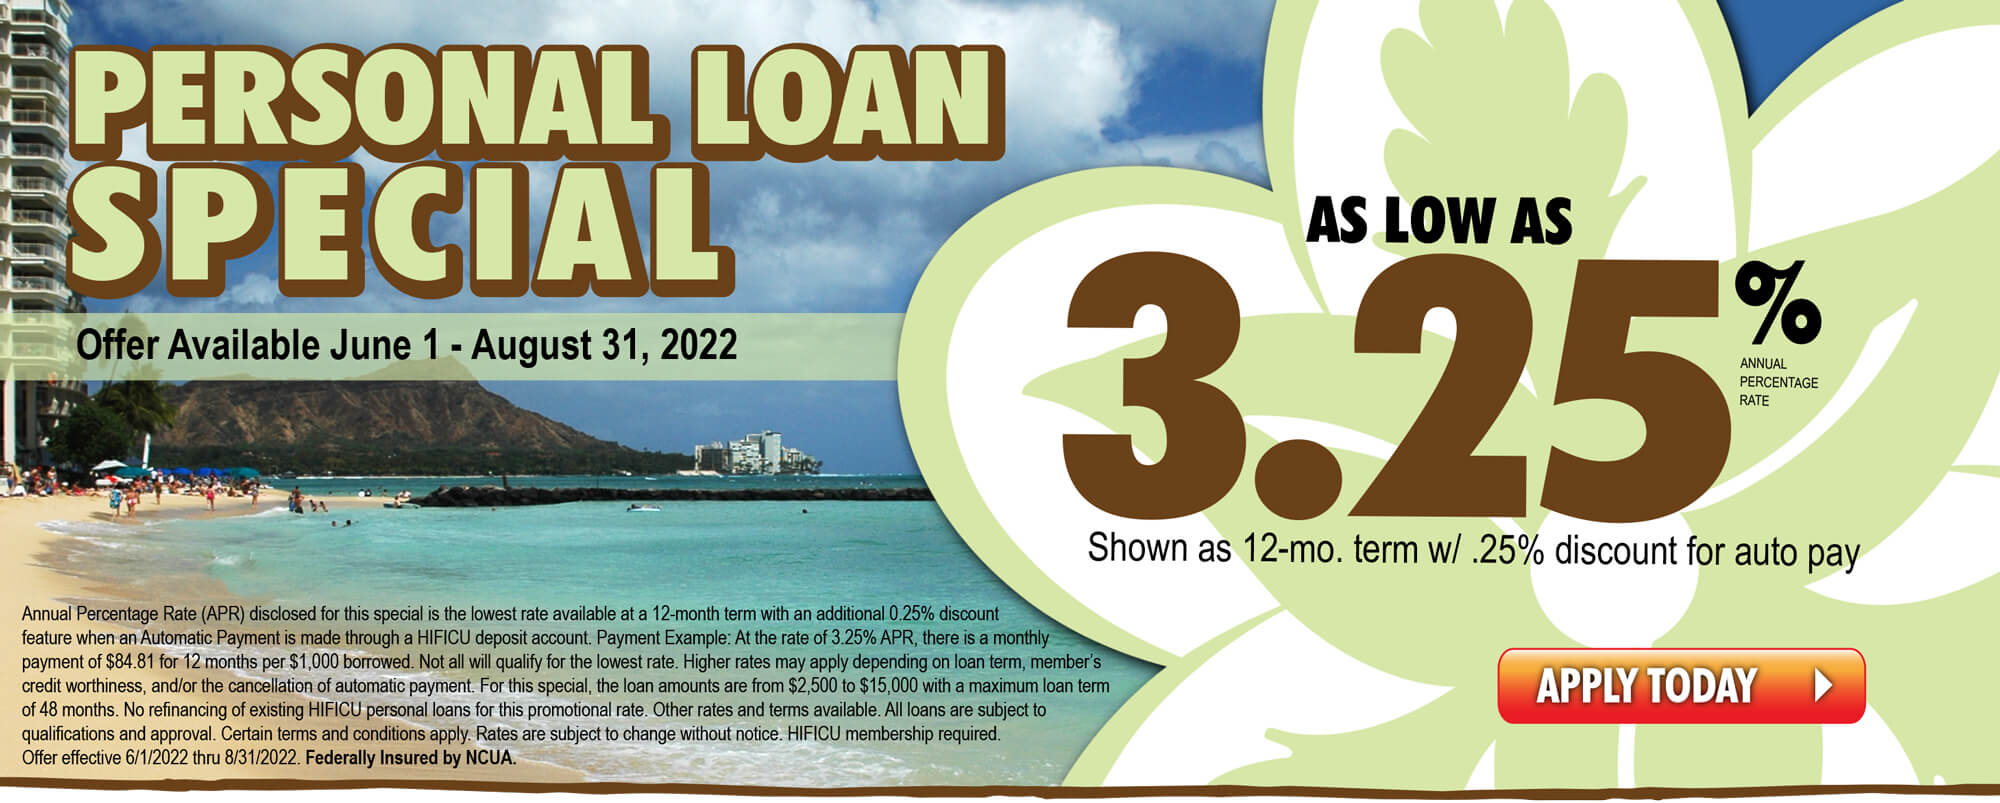 Summer Loan Special!  Personal Loan